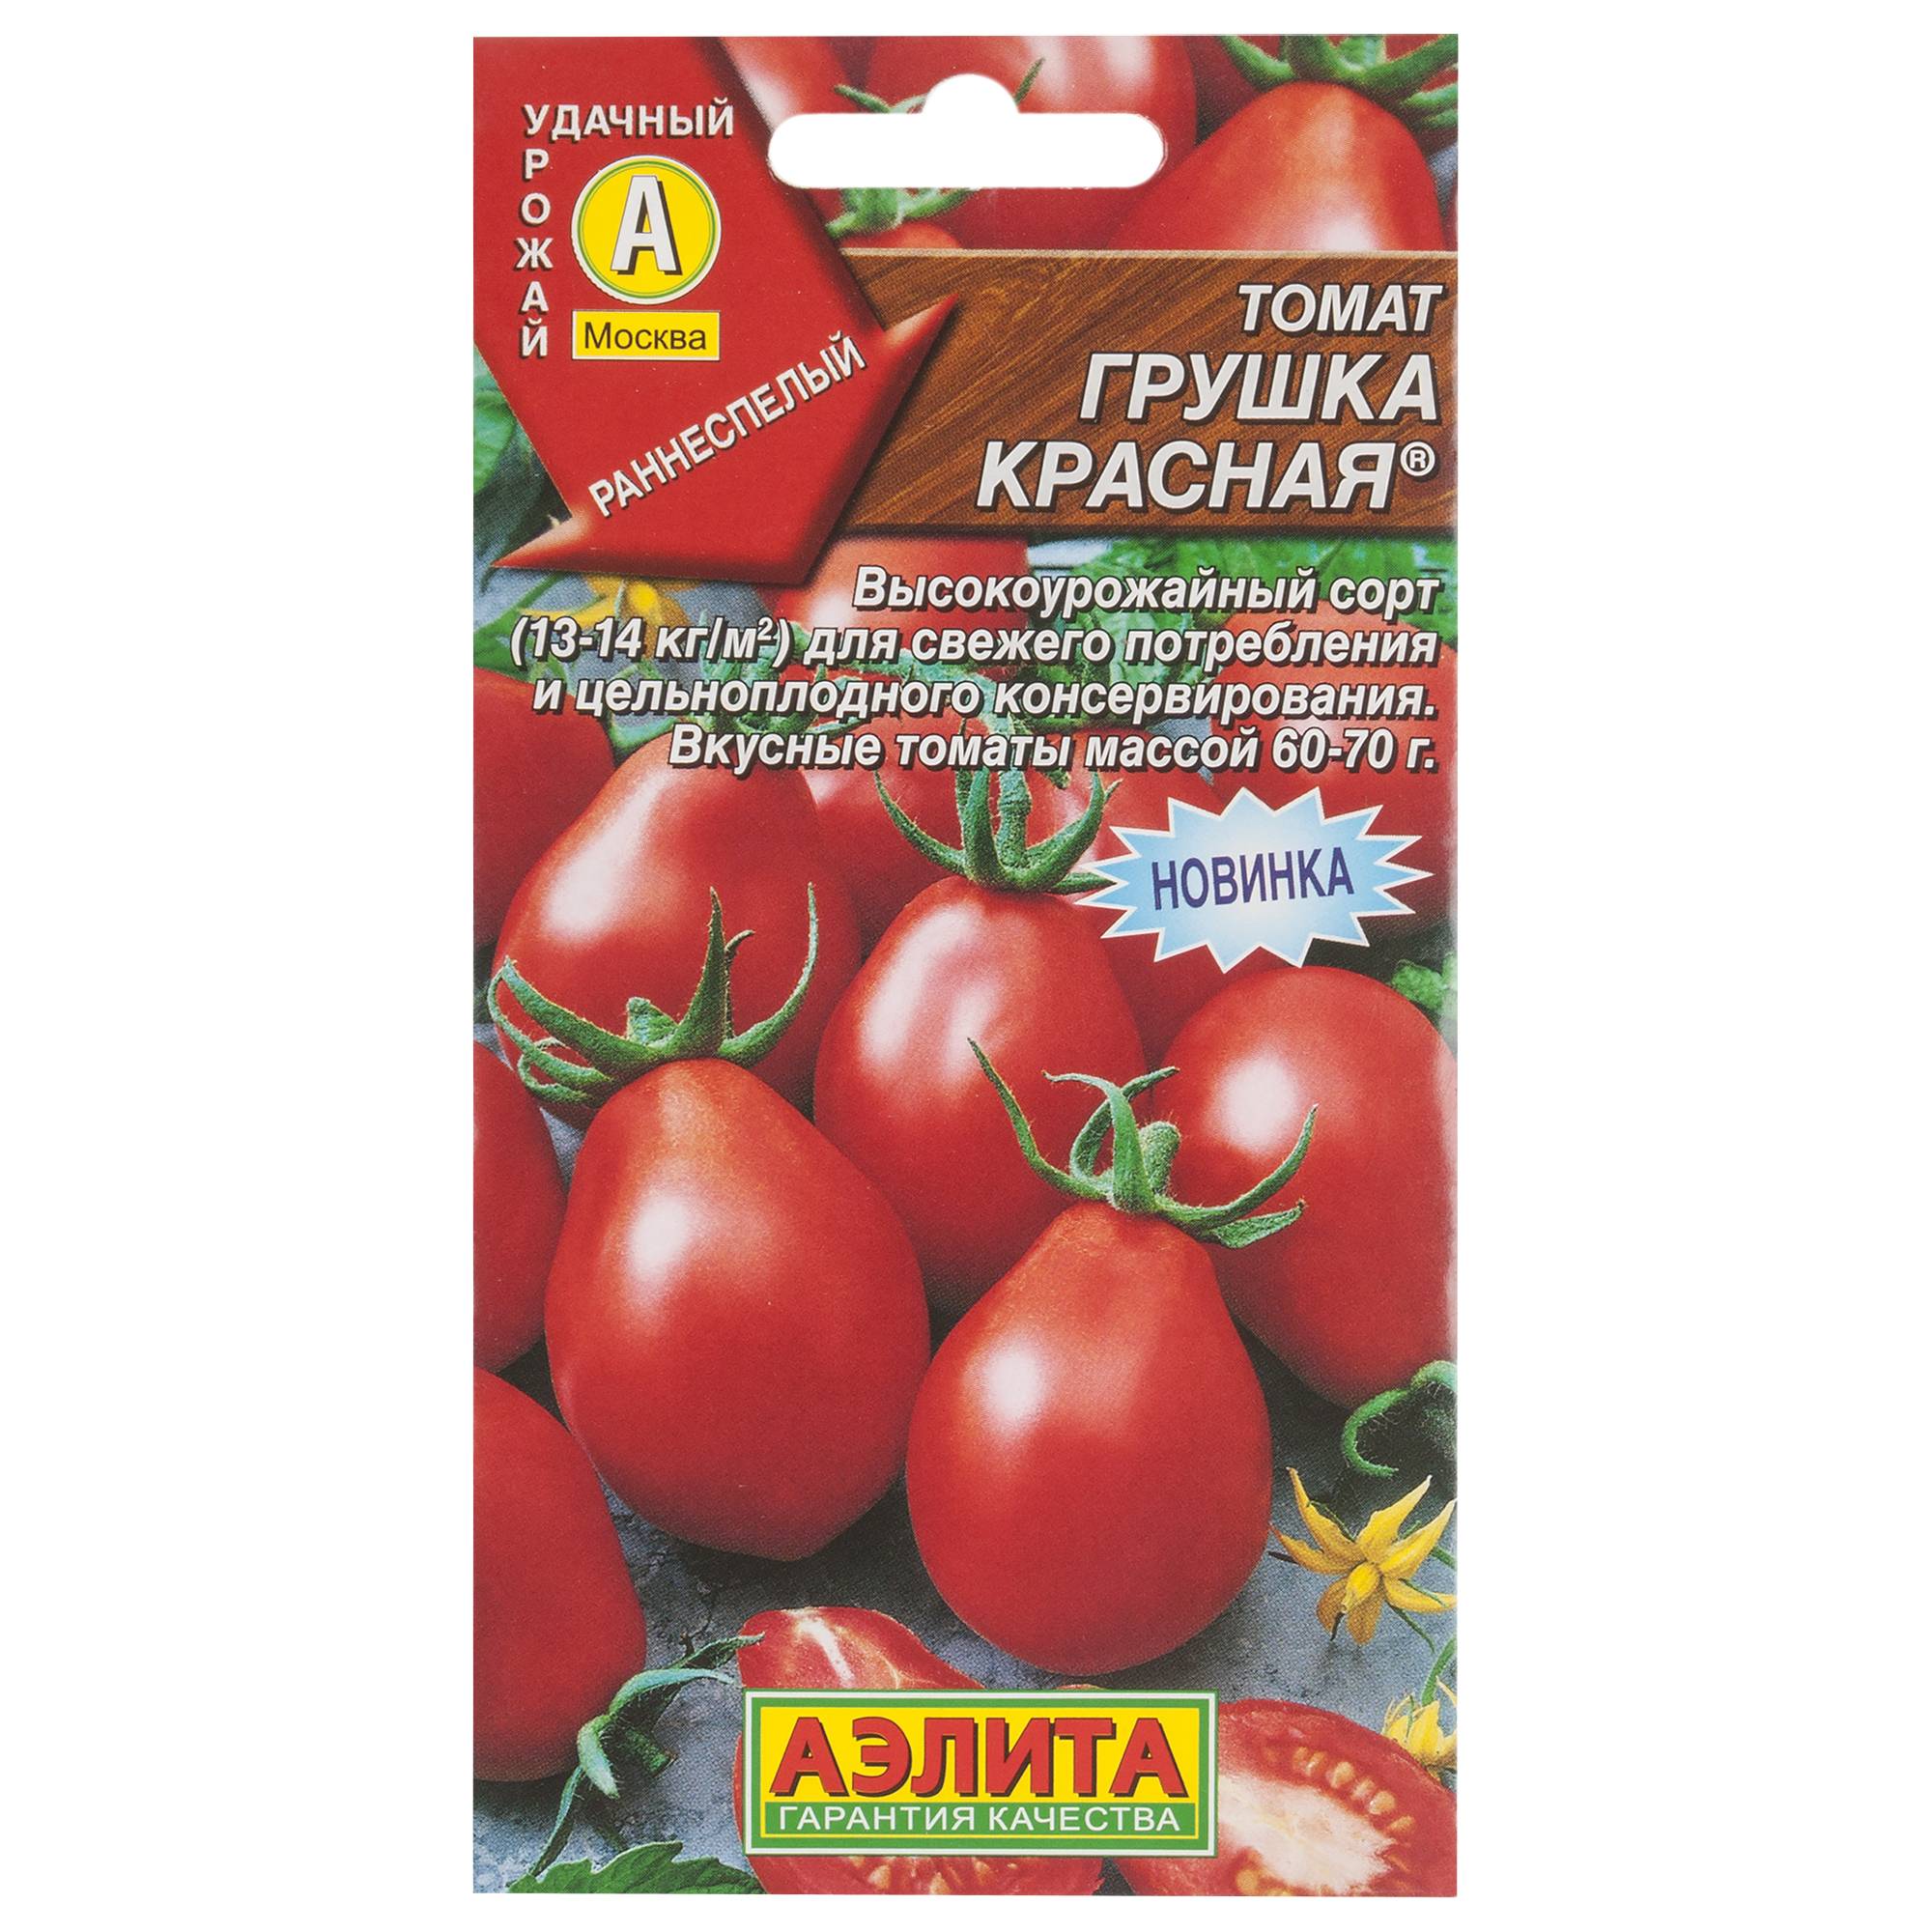 Серия томатов «гибрид тарасенко»: описание сортов